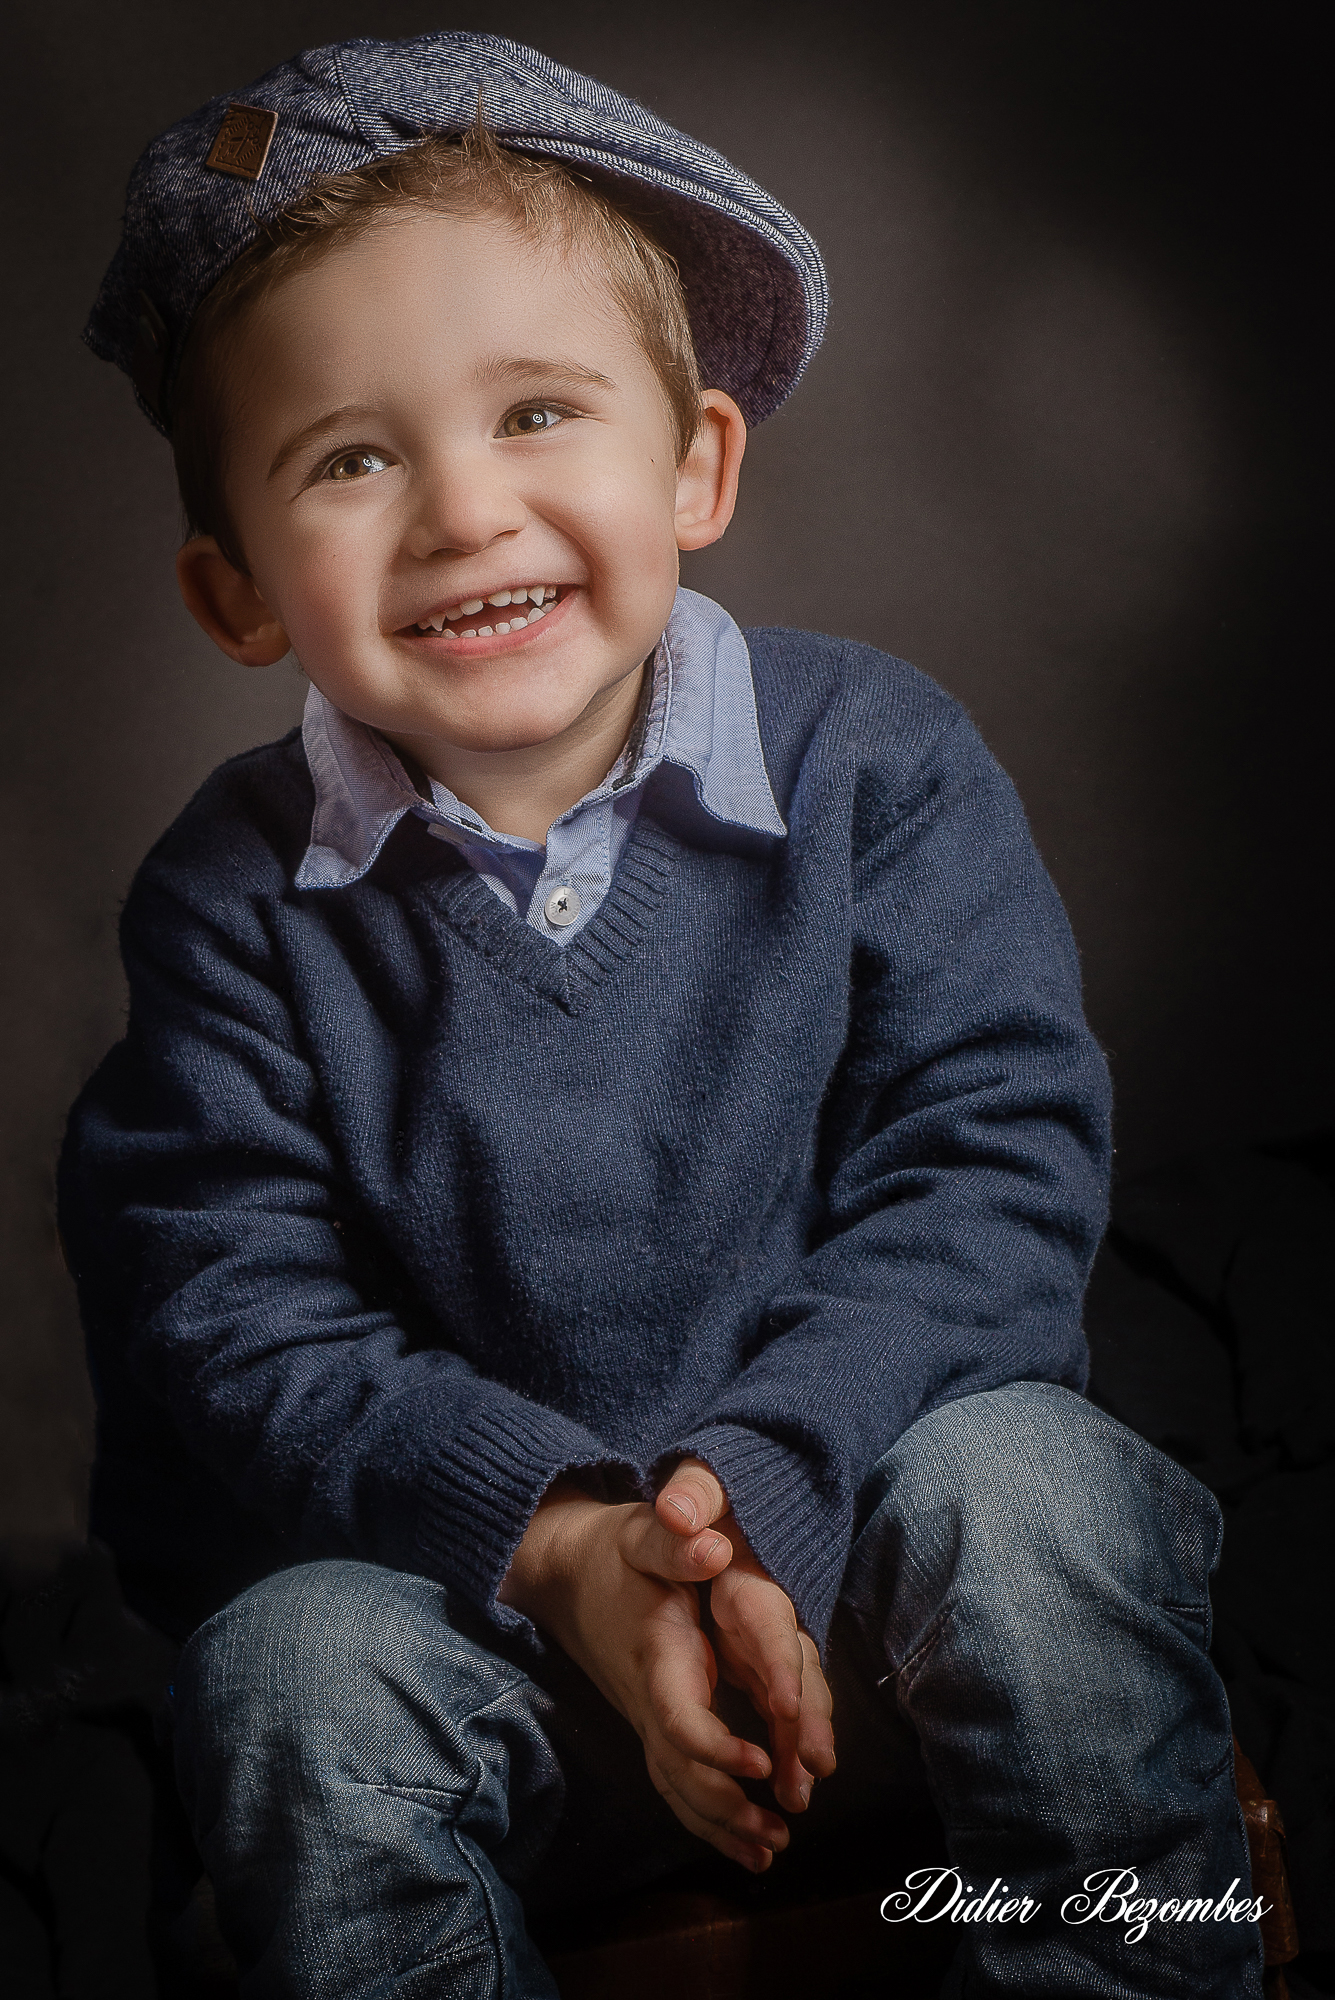 portrait-en-couleur-d'un-garçon-souriant-avec-une-casquette-photographe-Didier-Bezombes